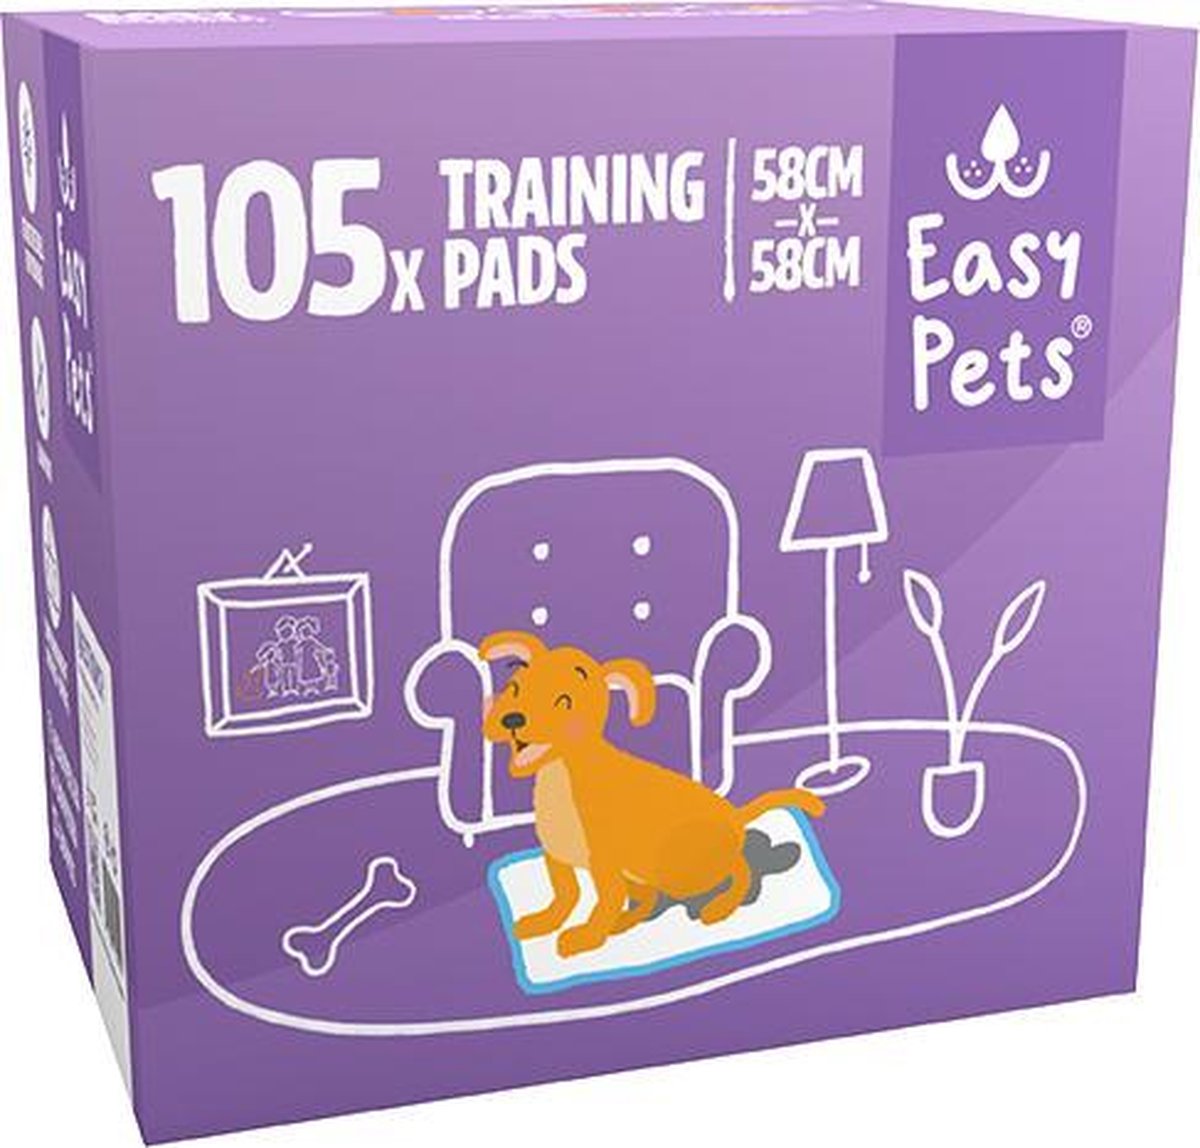 Easypets Puppy Training Pads - Zindelijkheidstraining - Hondentoilet - 58 x 58 cm - 105 stuks